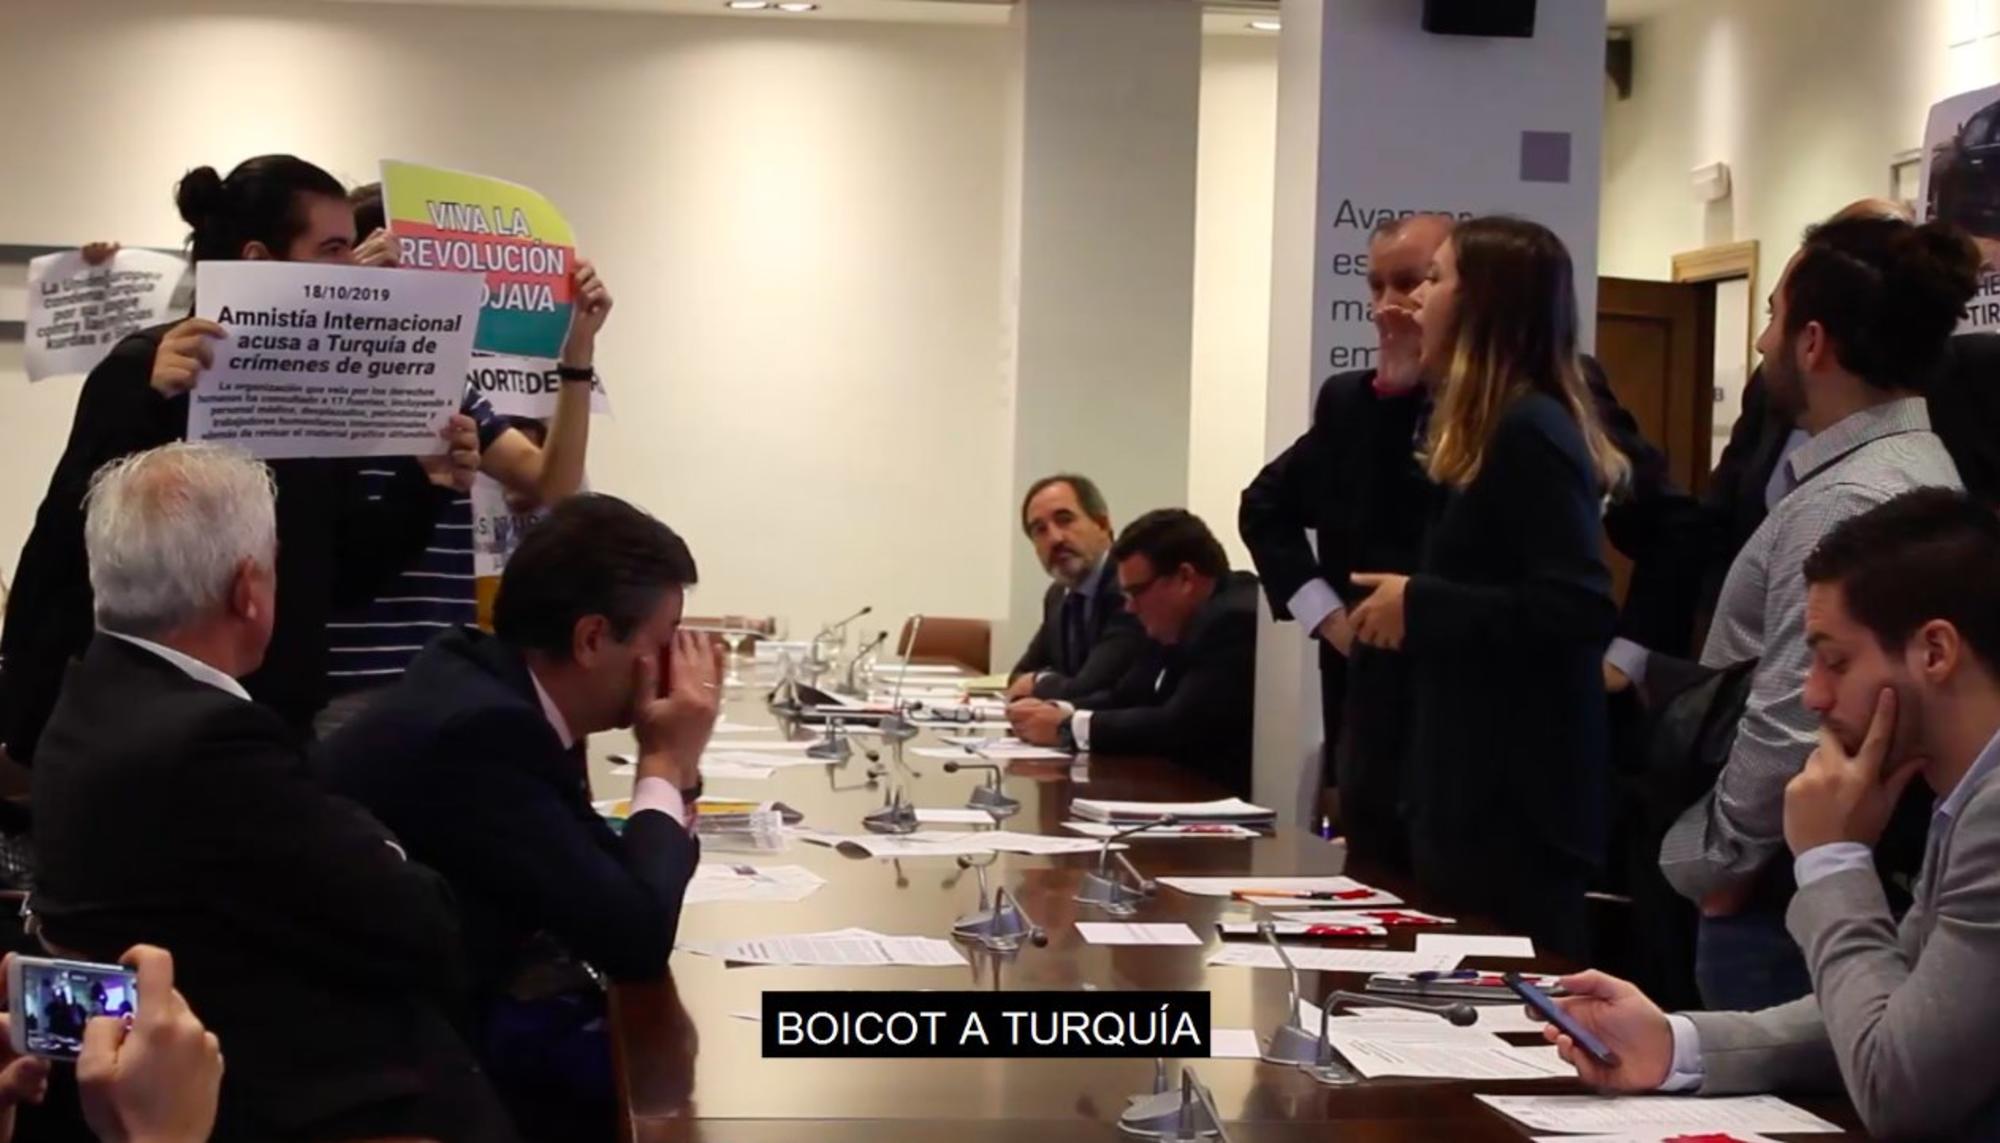 Acción de boicot en el encuentro de empresarios con el embajador de Turquía